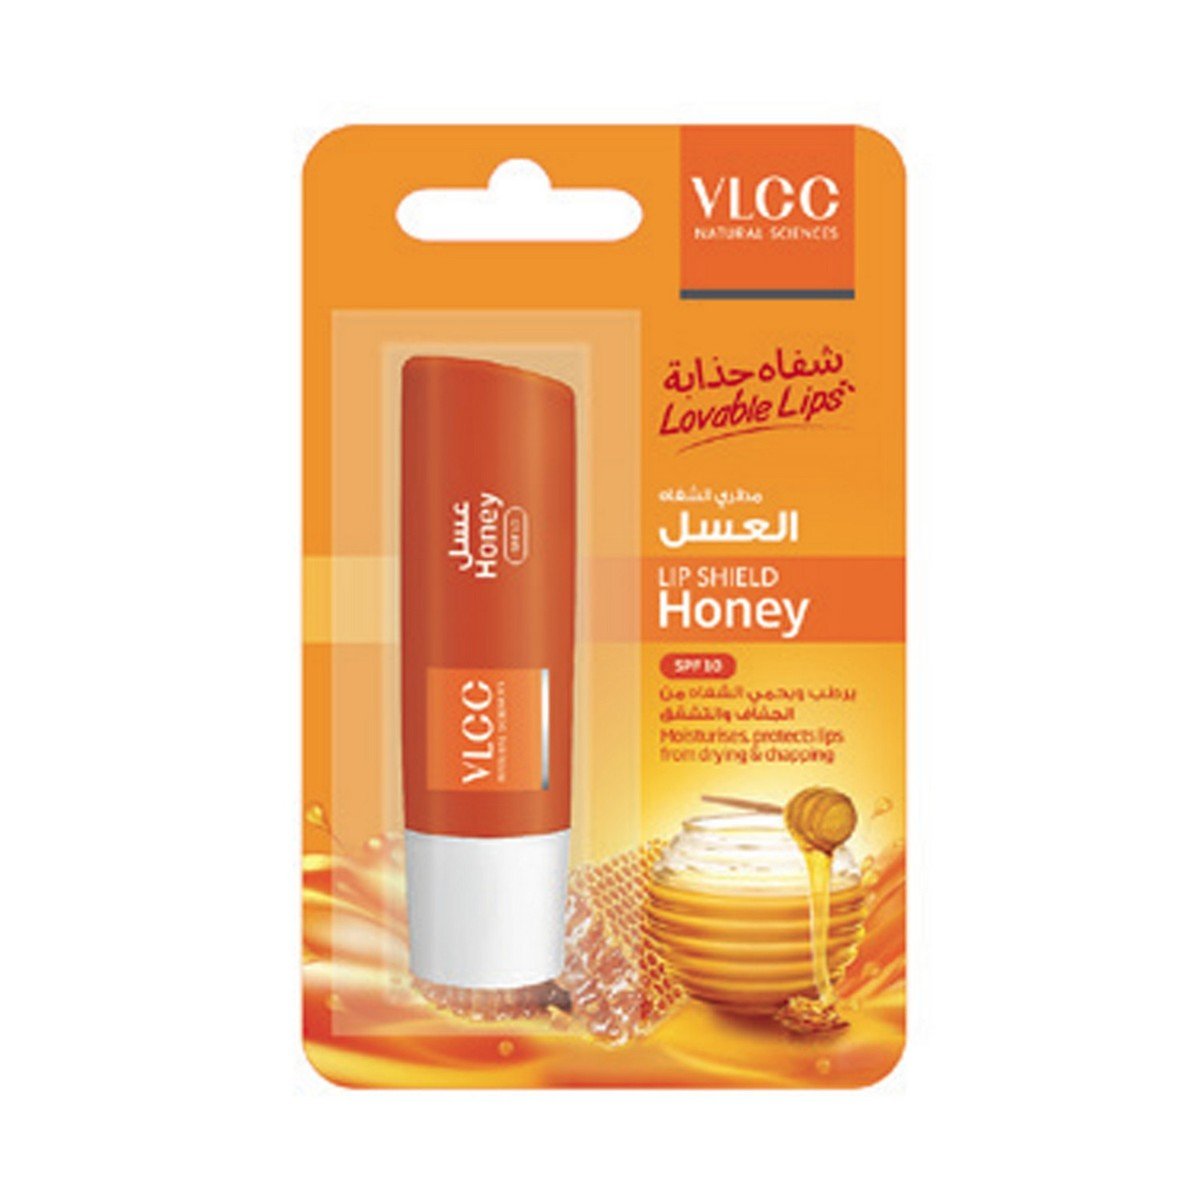 VLCC Lip Shield Honey with SPF10 4.5 g